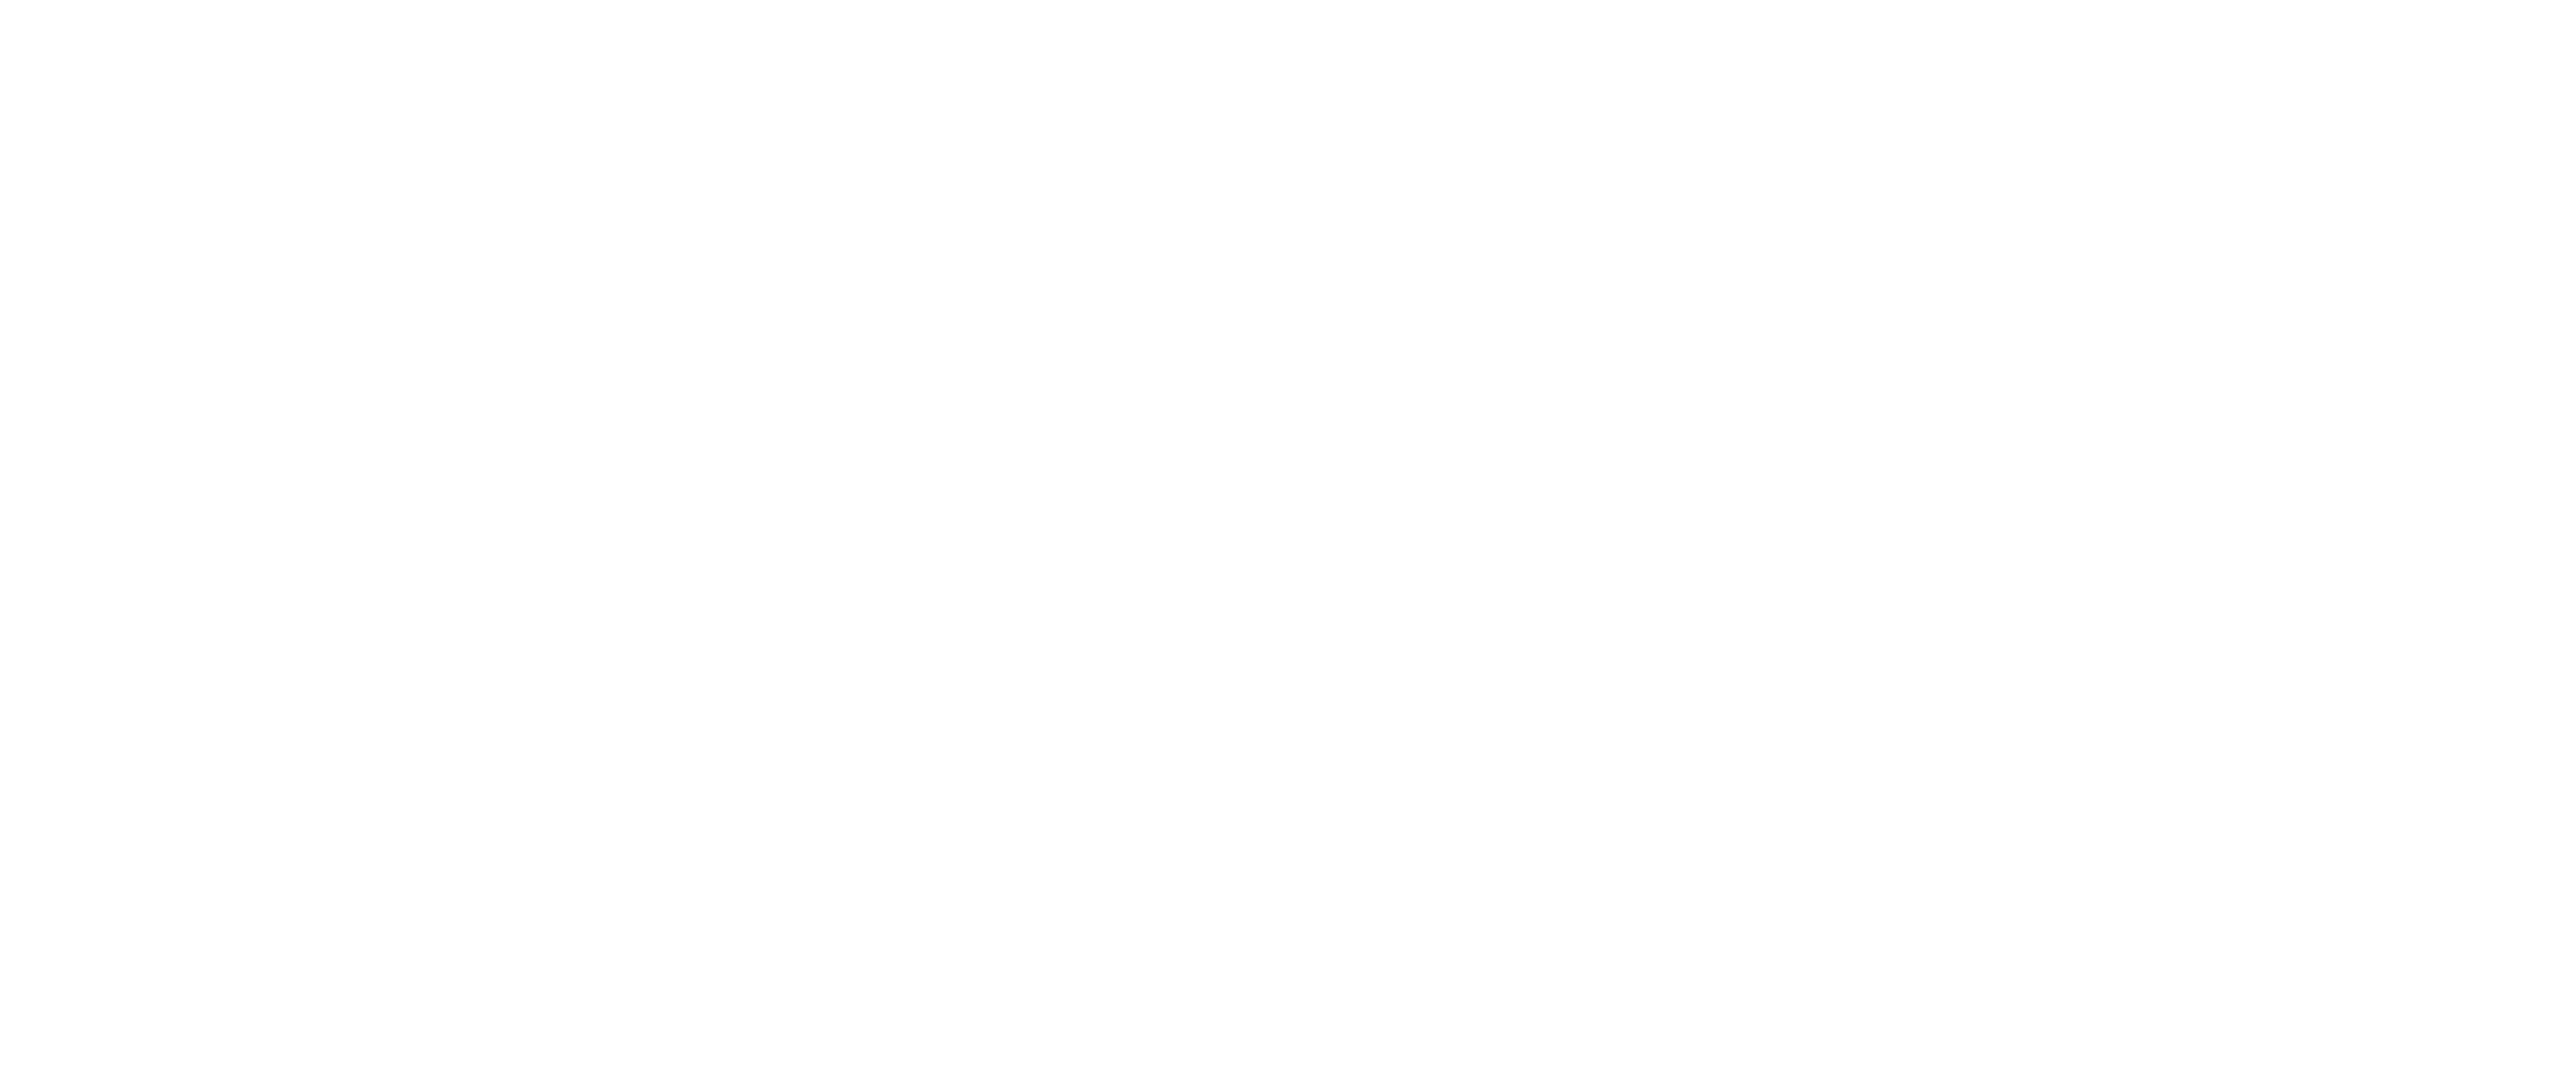 Kingdom Dance